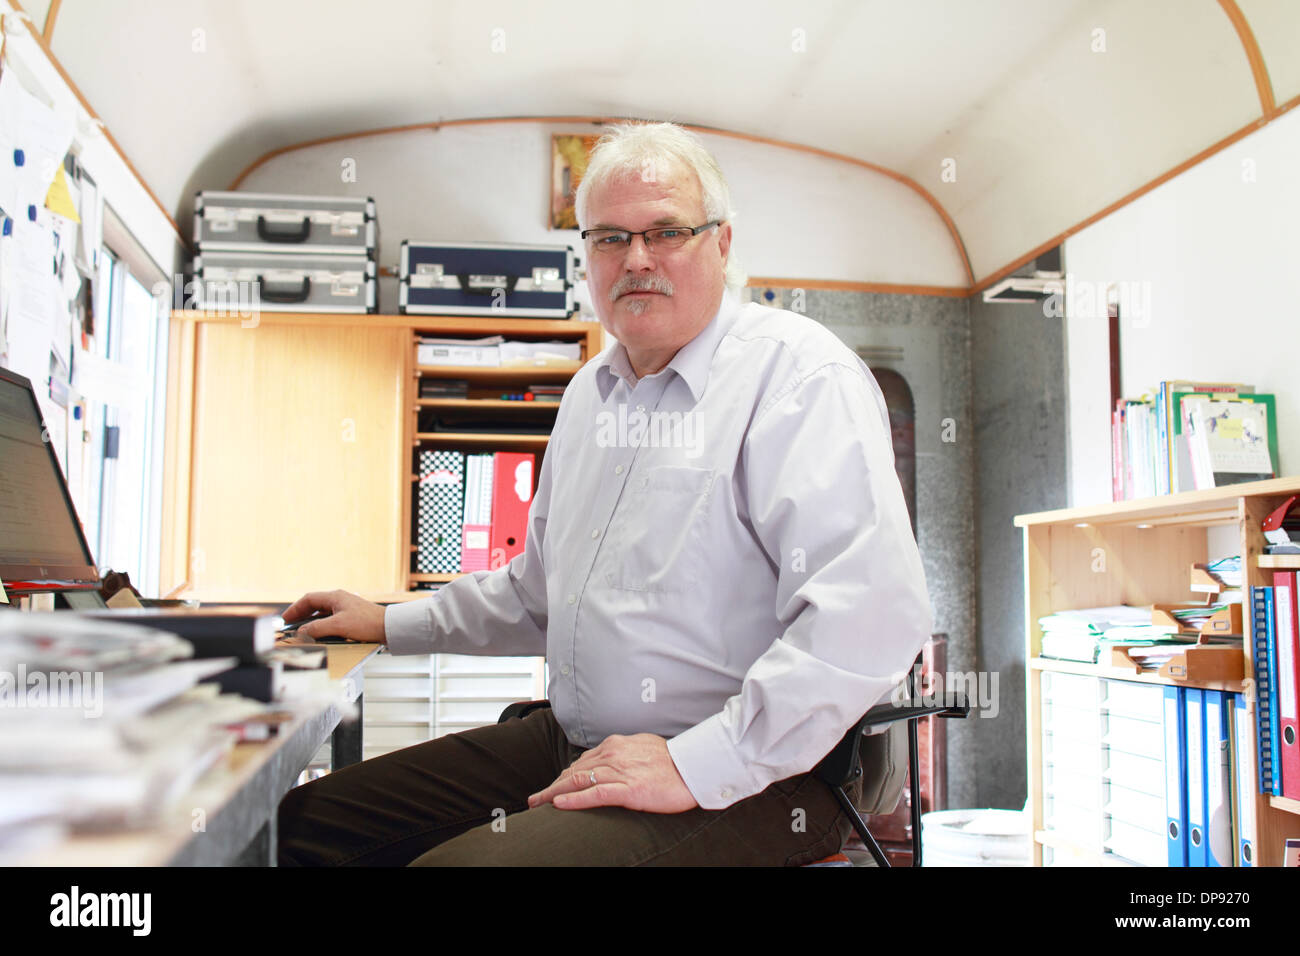 Un homme a un bureau d'affaires dans un emplacement caravane Banque D'Images